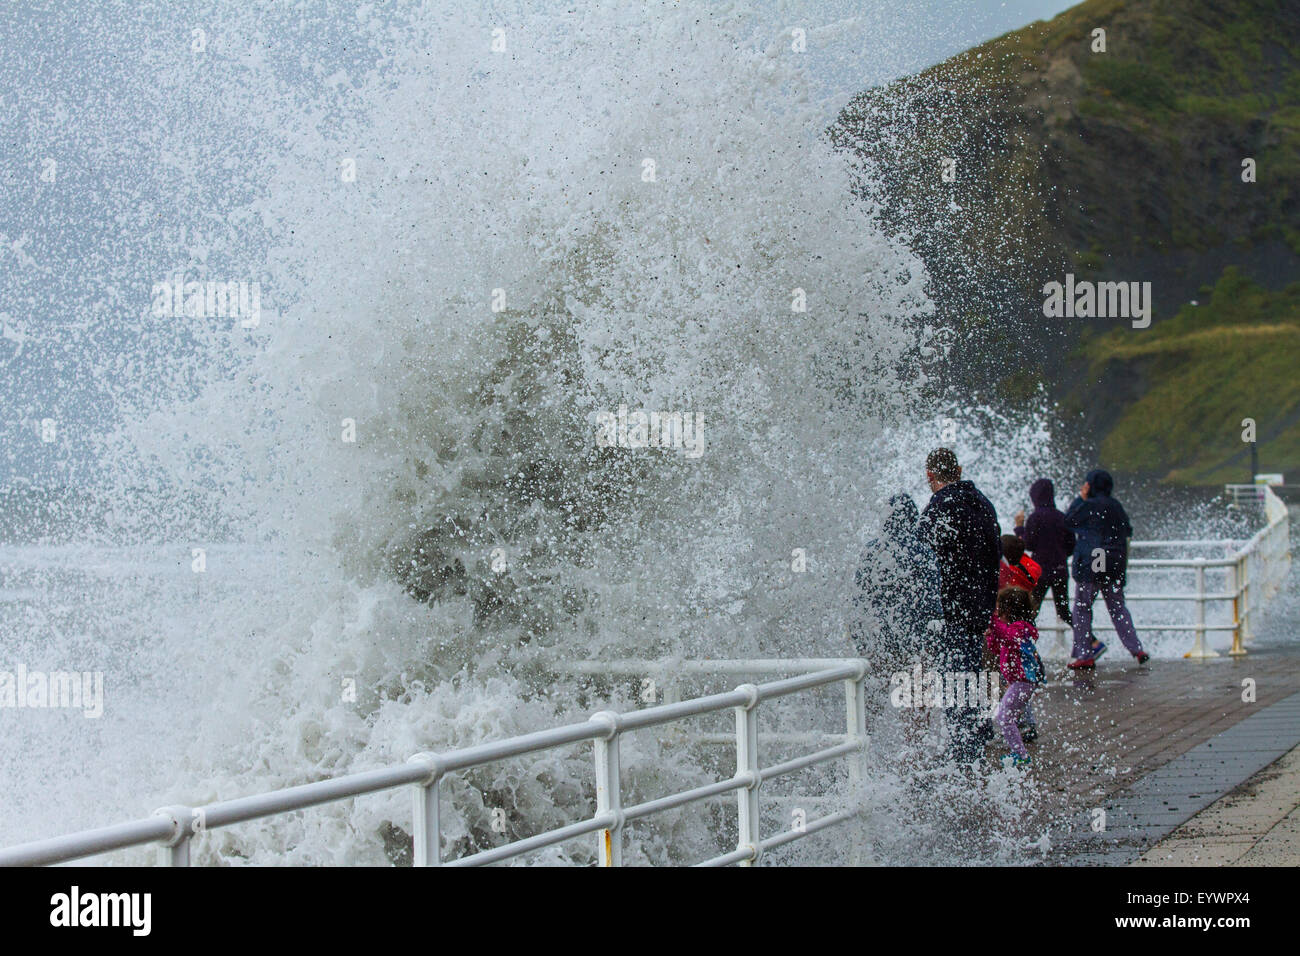 Aberystwyth, Pays de Galles, Royaume-Uni. 4 août 2015. Le temps orageux. Une houle de 5 à 8 pieds, vents forts et une marée haute à cmbine lash Aberystwyth front de mer avec des vagues énormes. Une famille en vacances à jouer en esquivant les vagues sur la promenade du front de mer Crédit : Alan Hale/Alamy Live News Banque D'Images